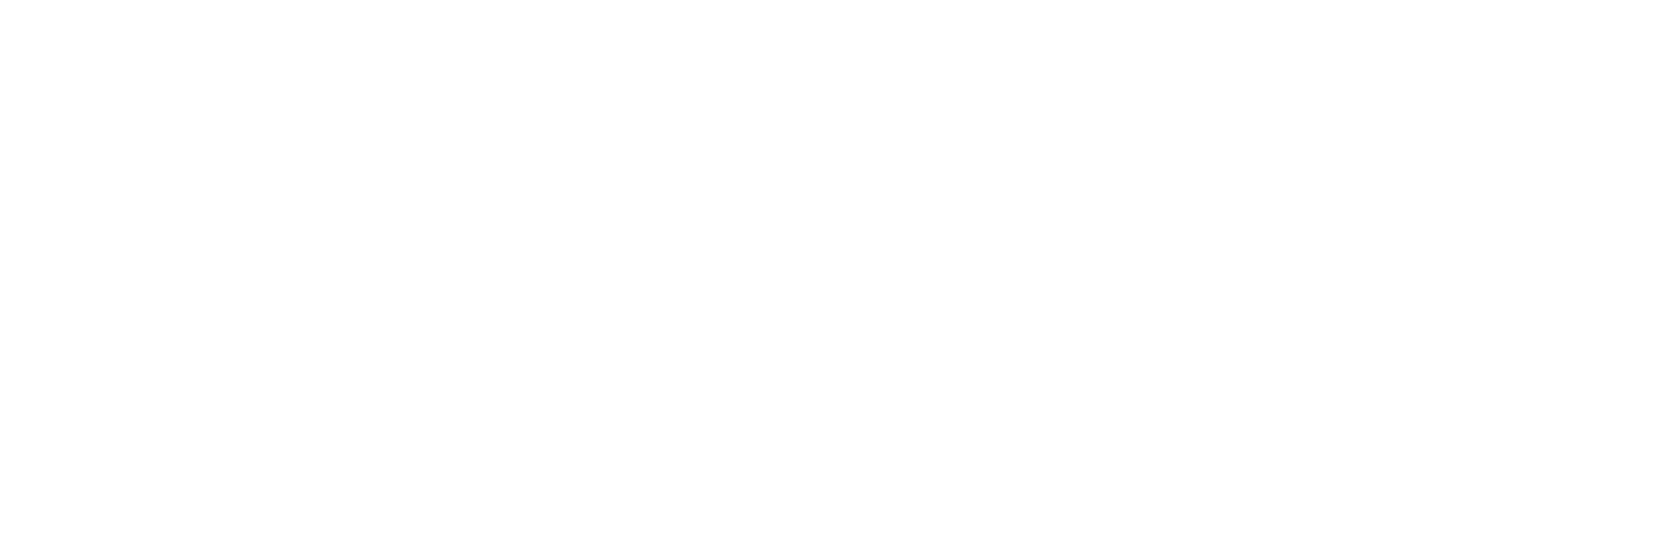 Quaker Communications & Outreach